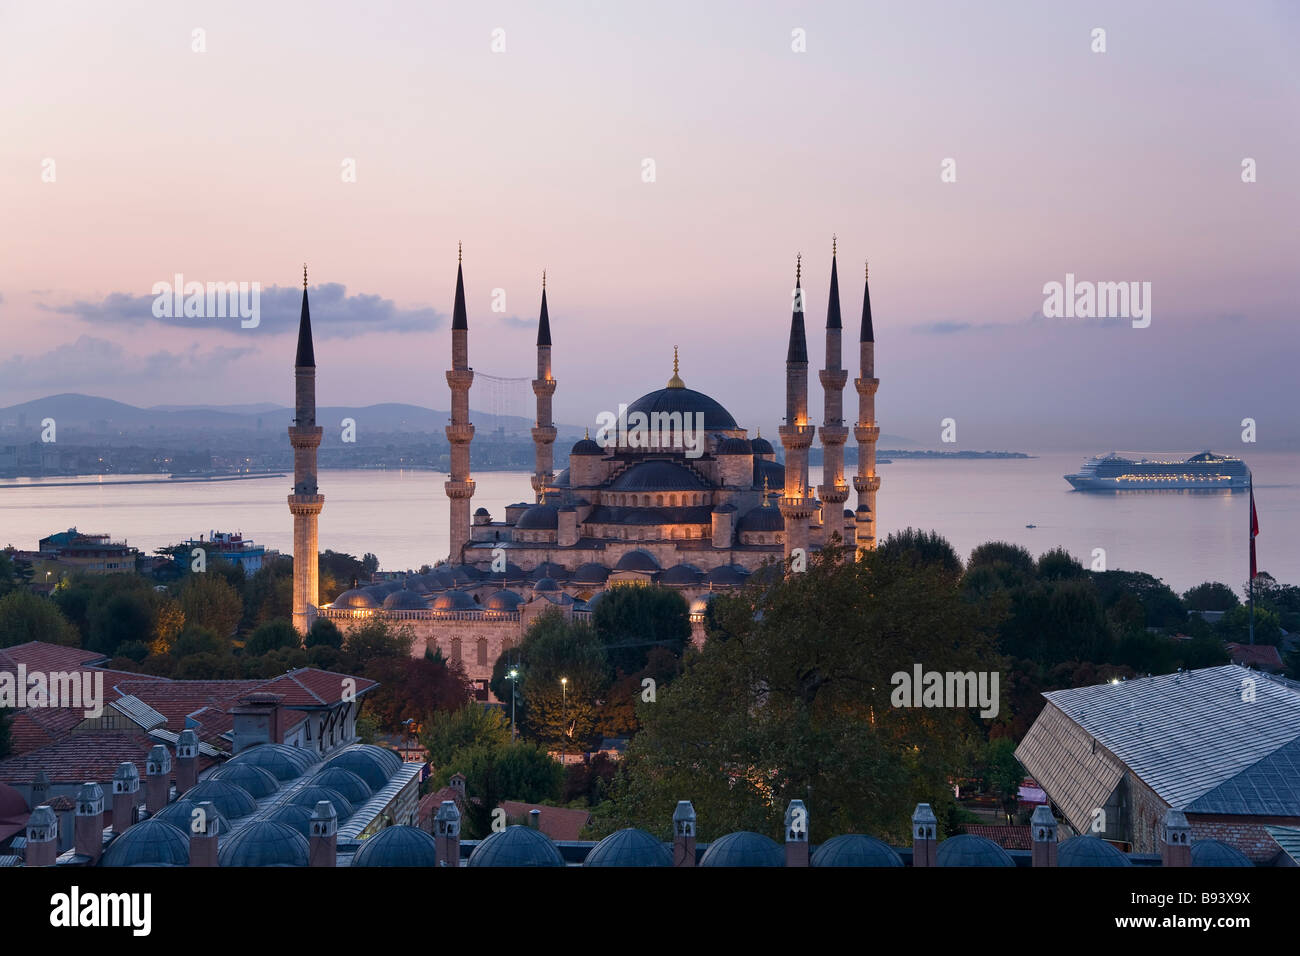 Die blaue Moschee Sultan Ahmet Moschee blaue Moschee 1609 1616 Stadtteil Sultanahmet Istanbul Türkei Stockfoto